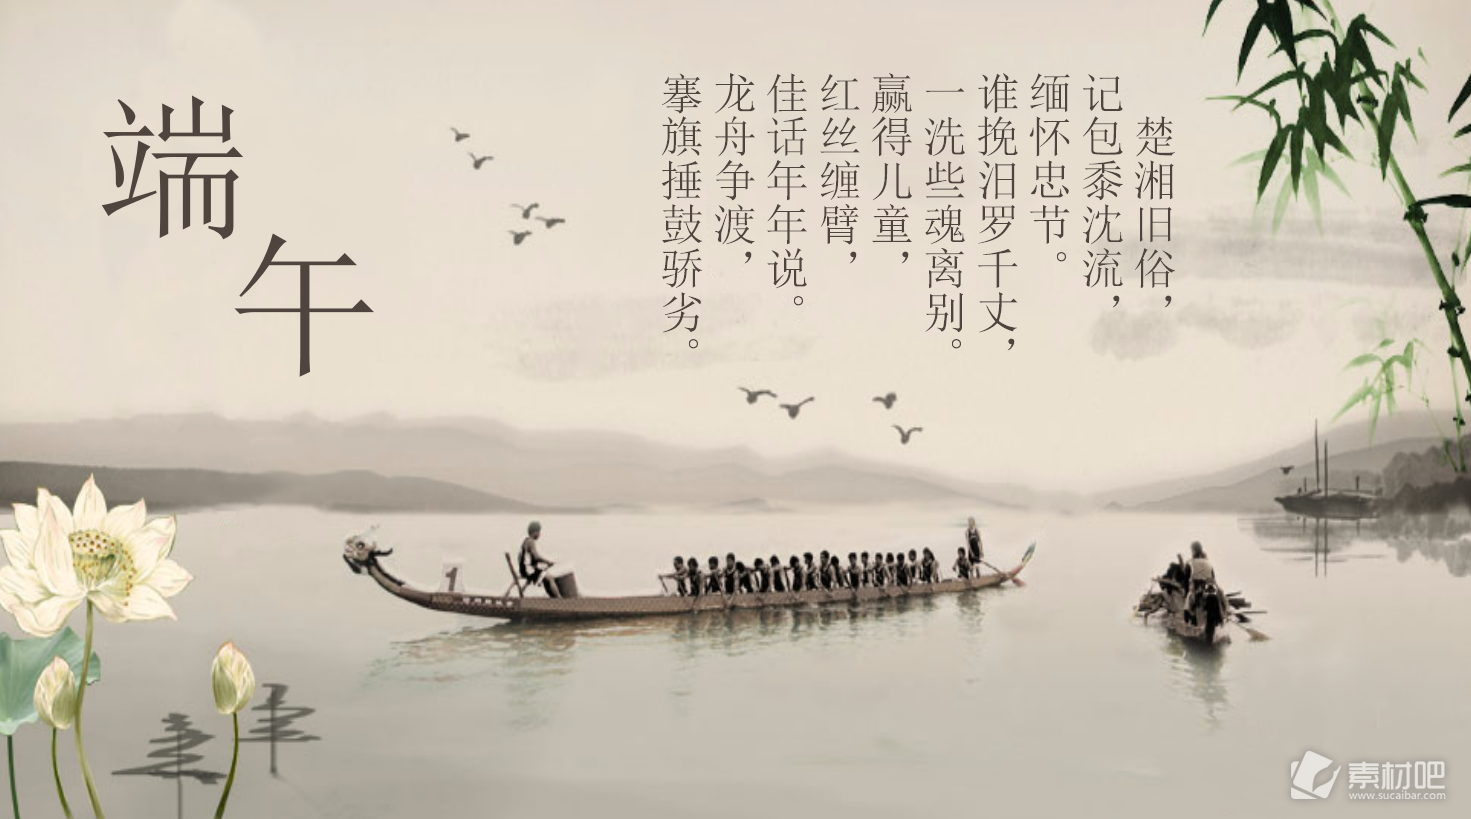 划龙舟背景的中国风端午节幻灯片模板